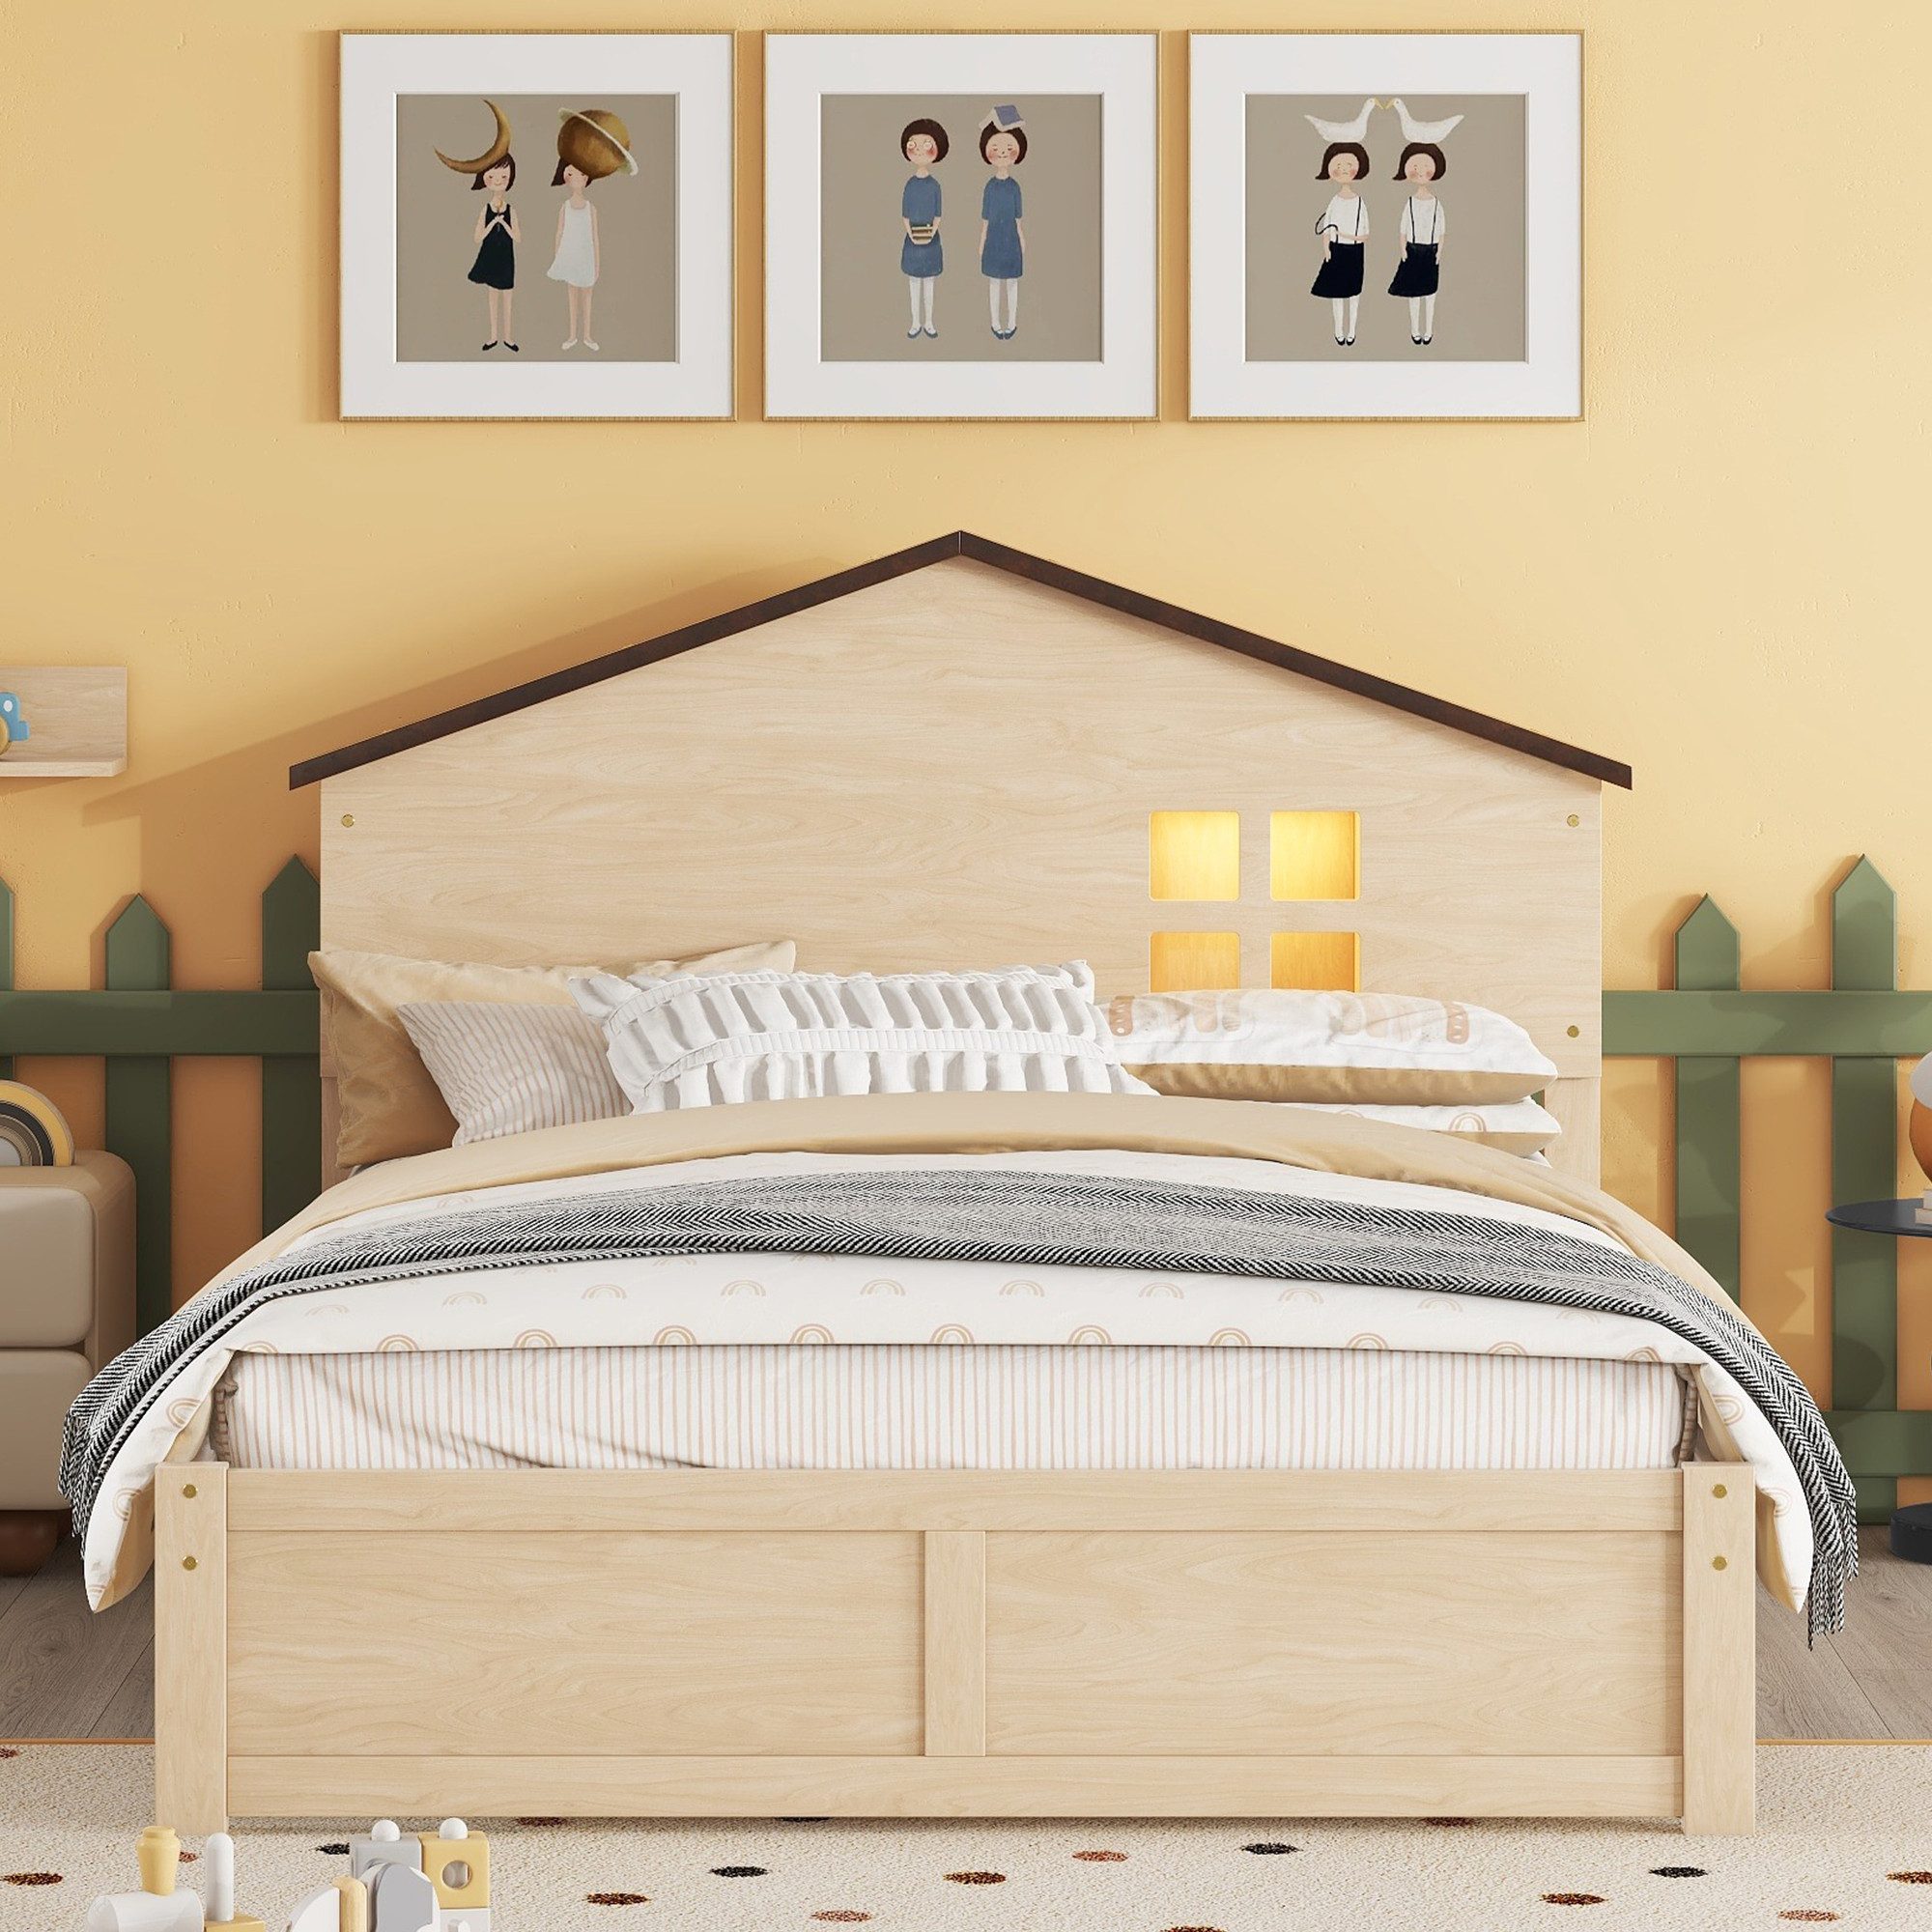 TavilaEcon Kinderbett flaches Bett mit kleine Fensterdekoration und LED-Nachtlicht, hausförmiges Holzbett, 140x200cm